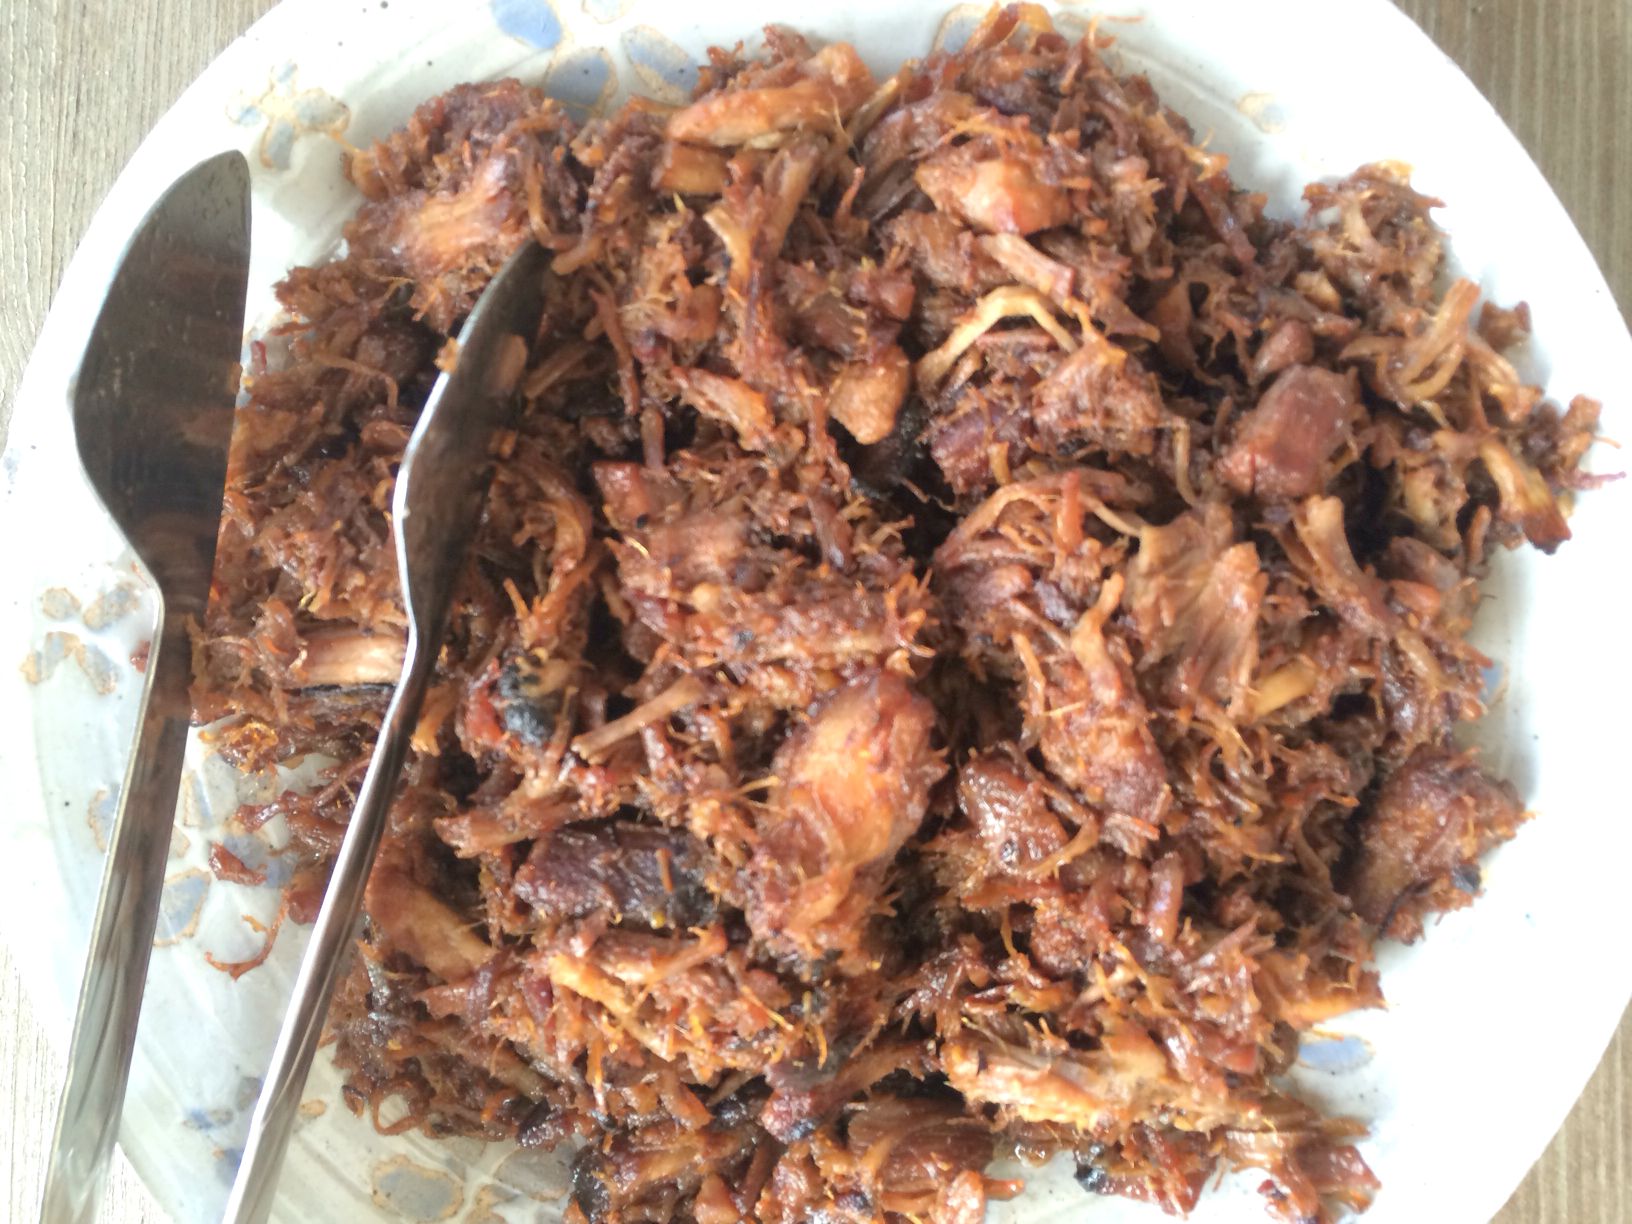 shredded pork